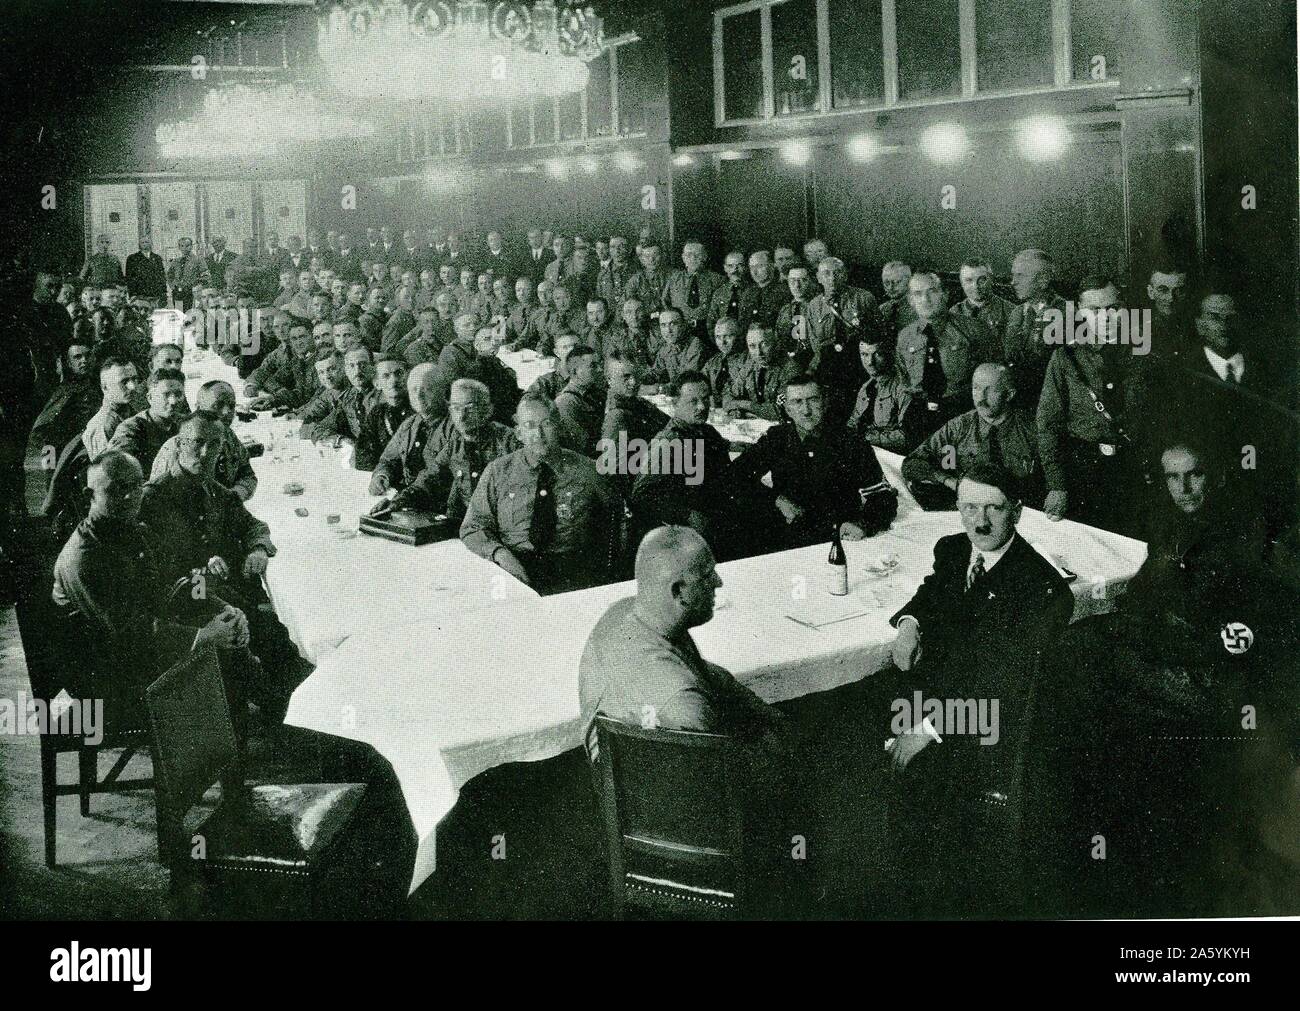 Adolf Hitler lors d'un rassemblement de Parti national-socialiste (nazi) membres du Reichstag, 1930. Banque D'Images